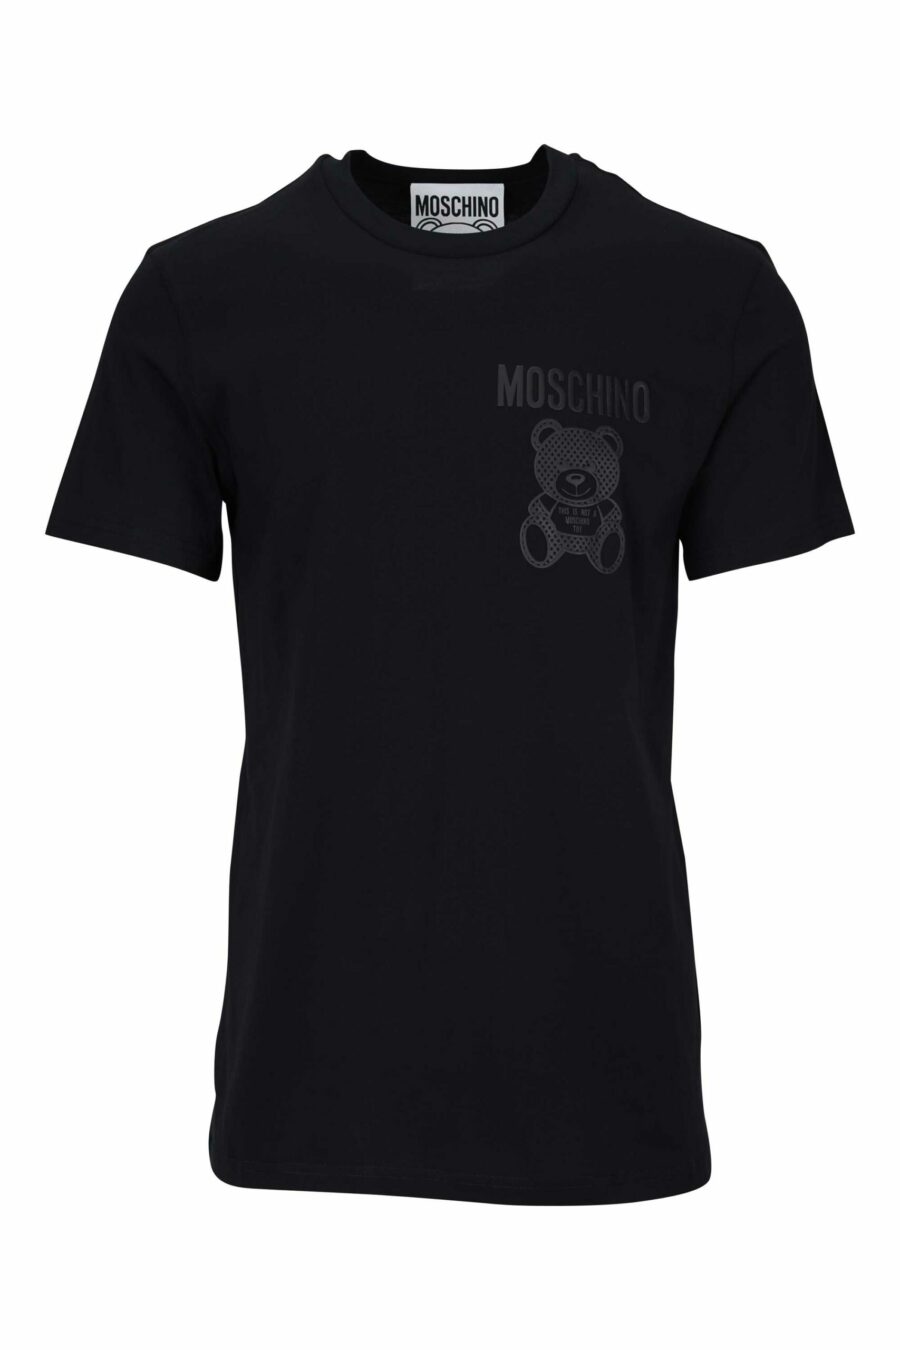 T-shirt noir avec ours monochrome en pointillés minilogue - 667113455969 scaled